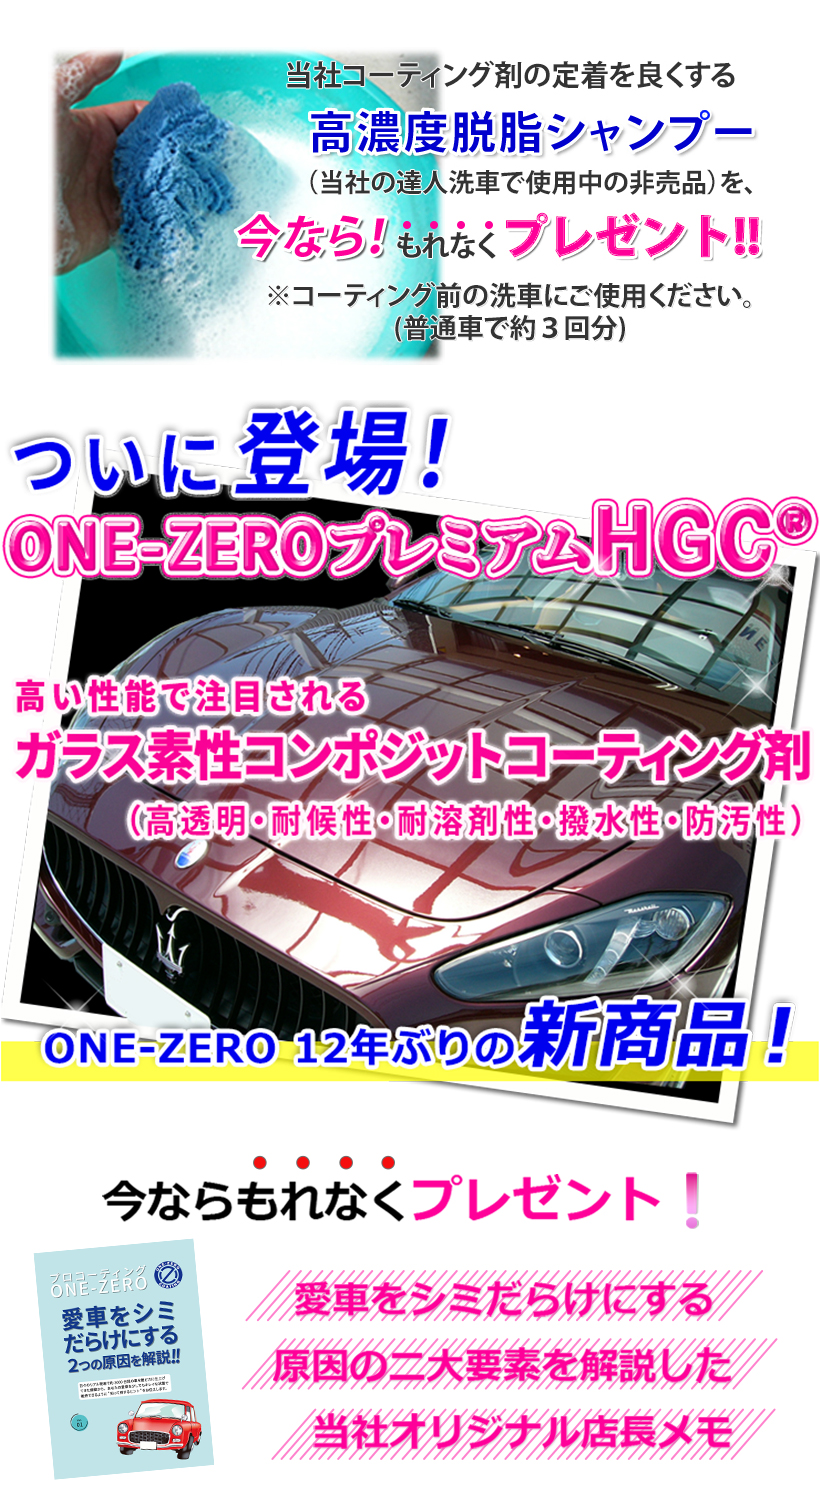 ONE=ZERO新商品プレミアムHGCのイメージ